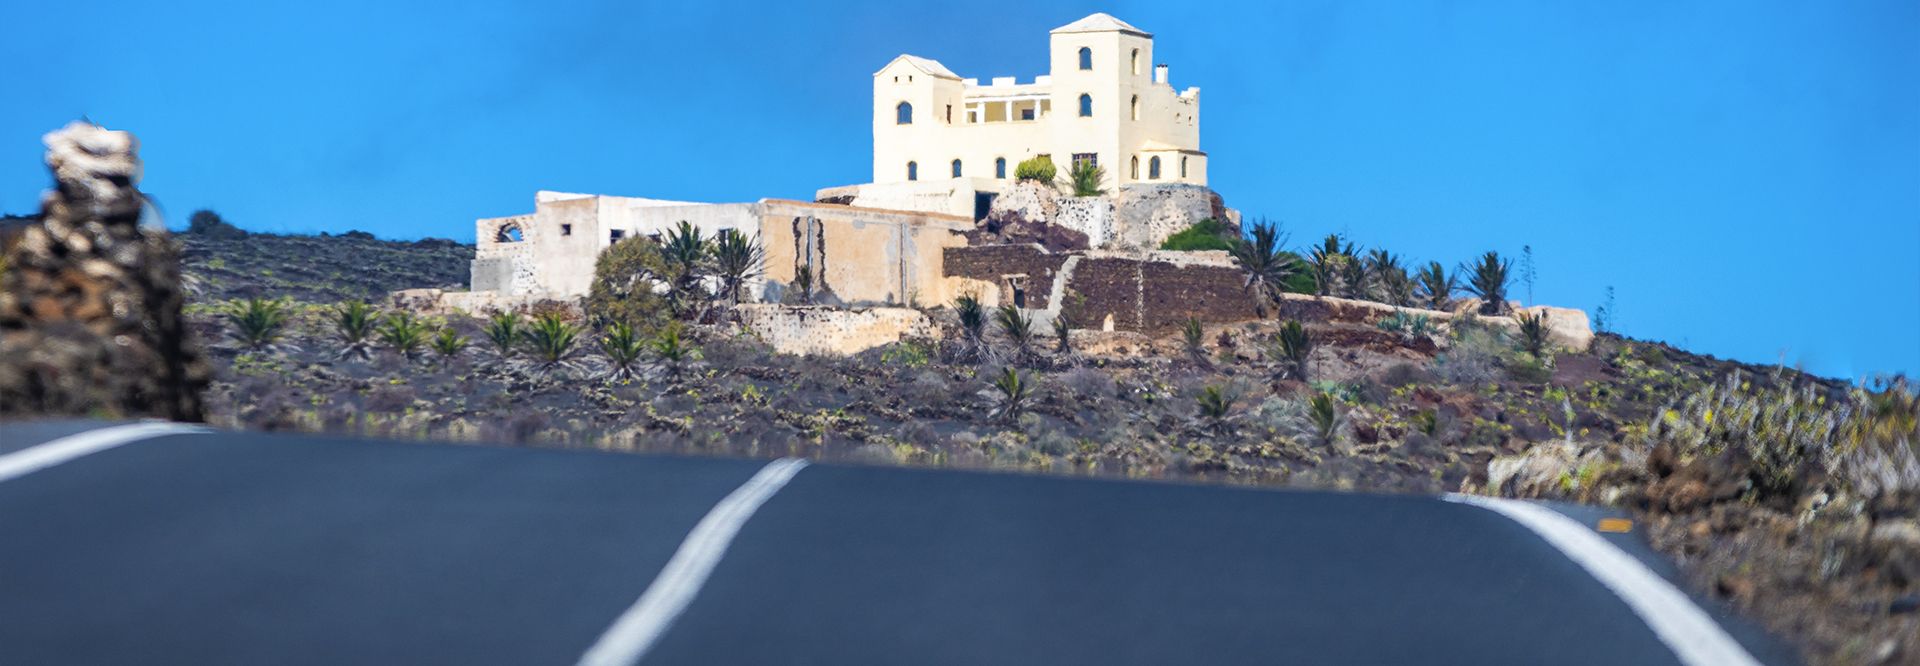 Ruta ciclista por el norte de Lanzarote. Guías y planazos turísticos en Lanzarote.